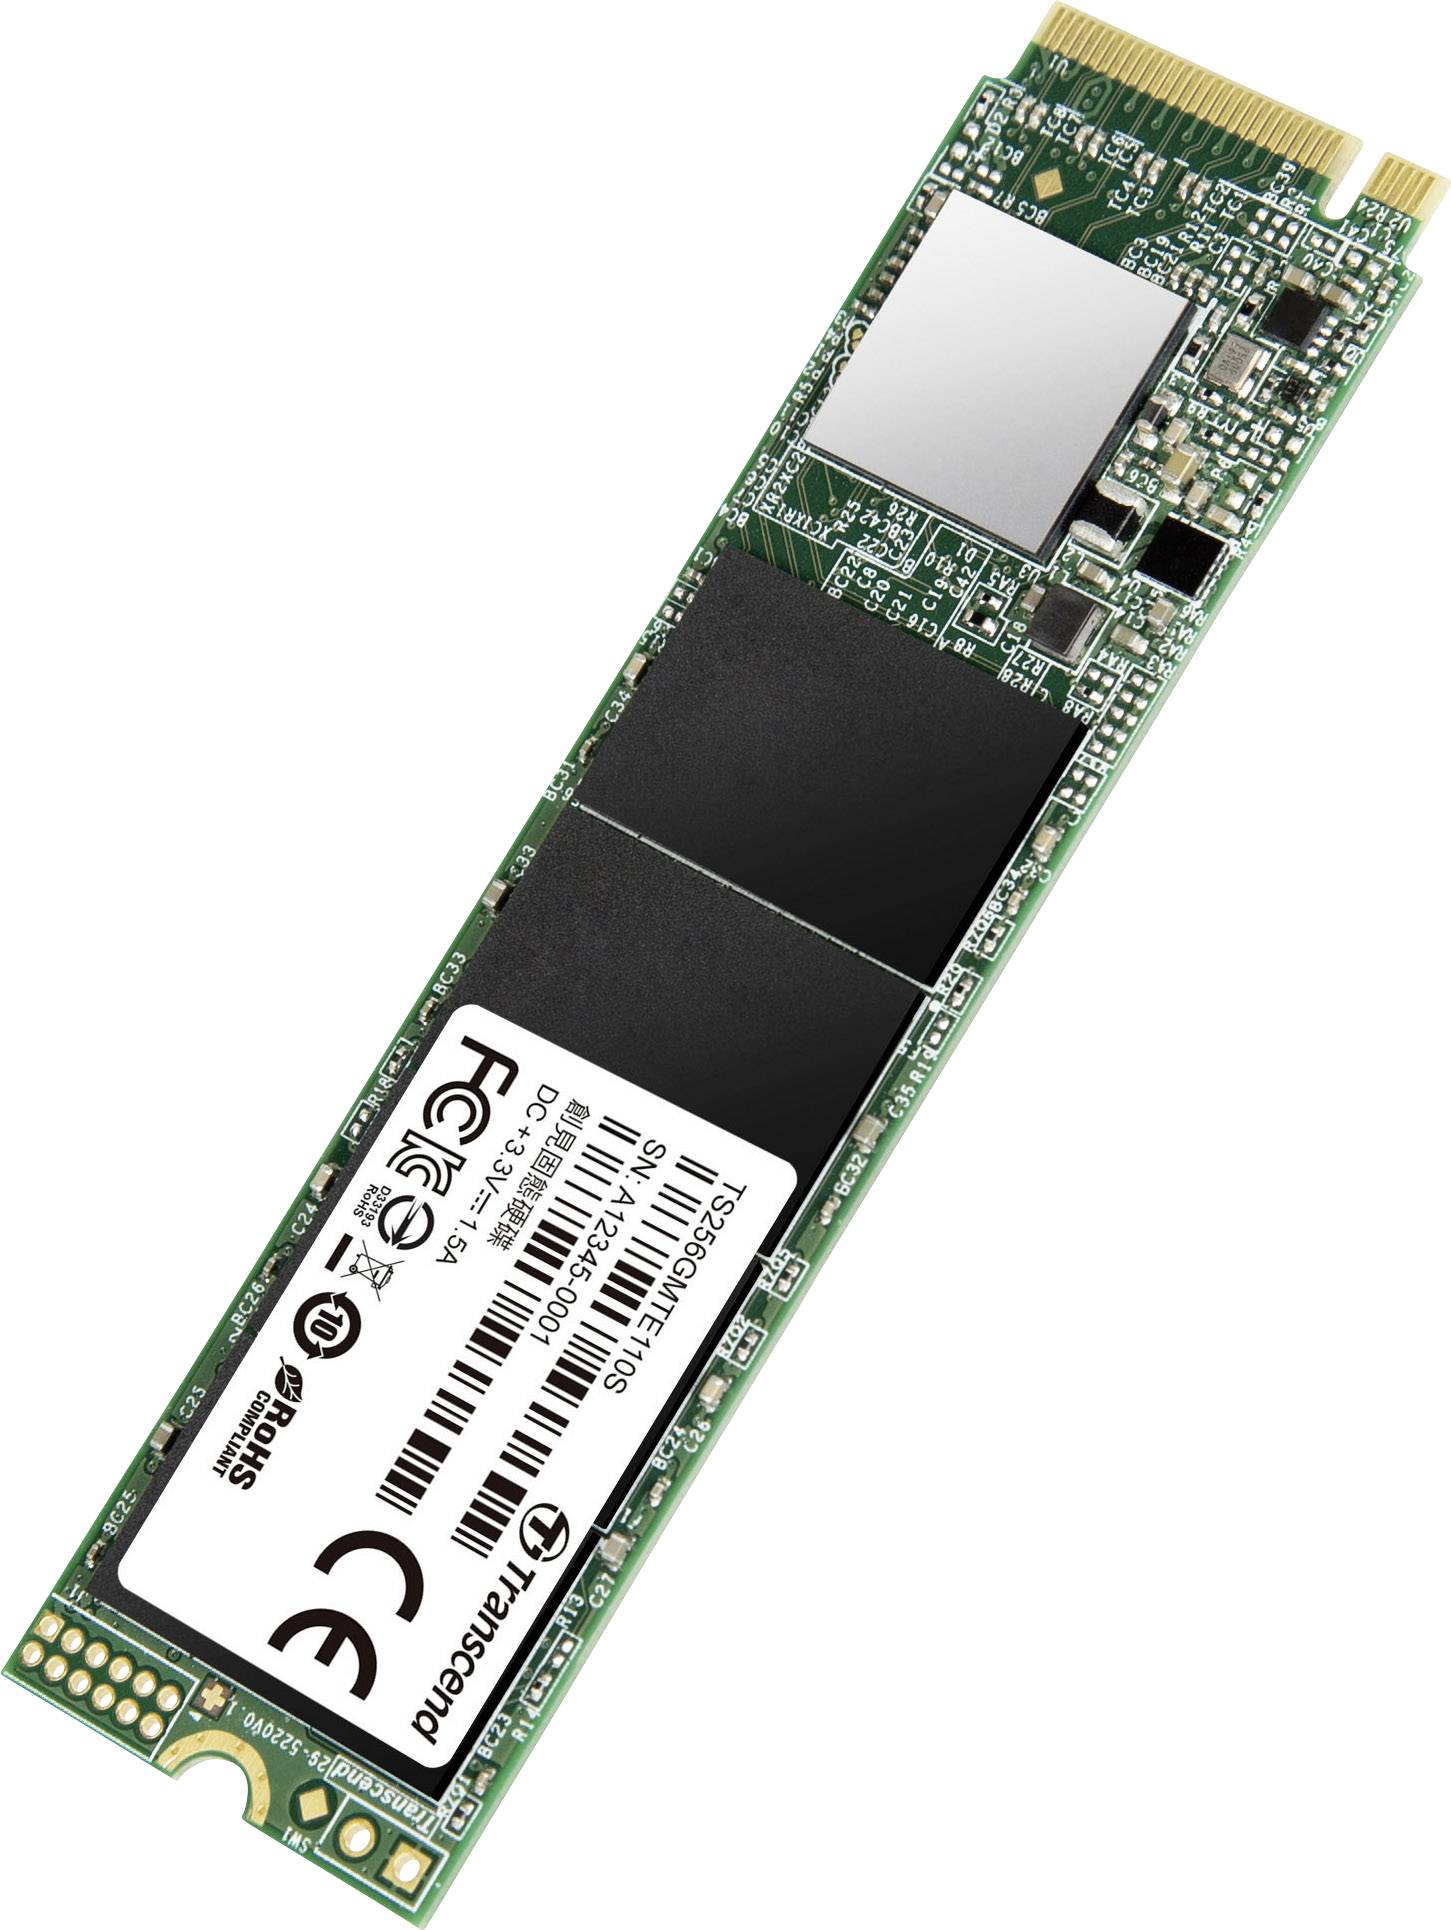 Transcend 110S 256 GB NVMe/PCIe M.2 internal SSD M.2 NVMe PCIe 3.0 x4  Retail TS256GMTE110S